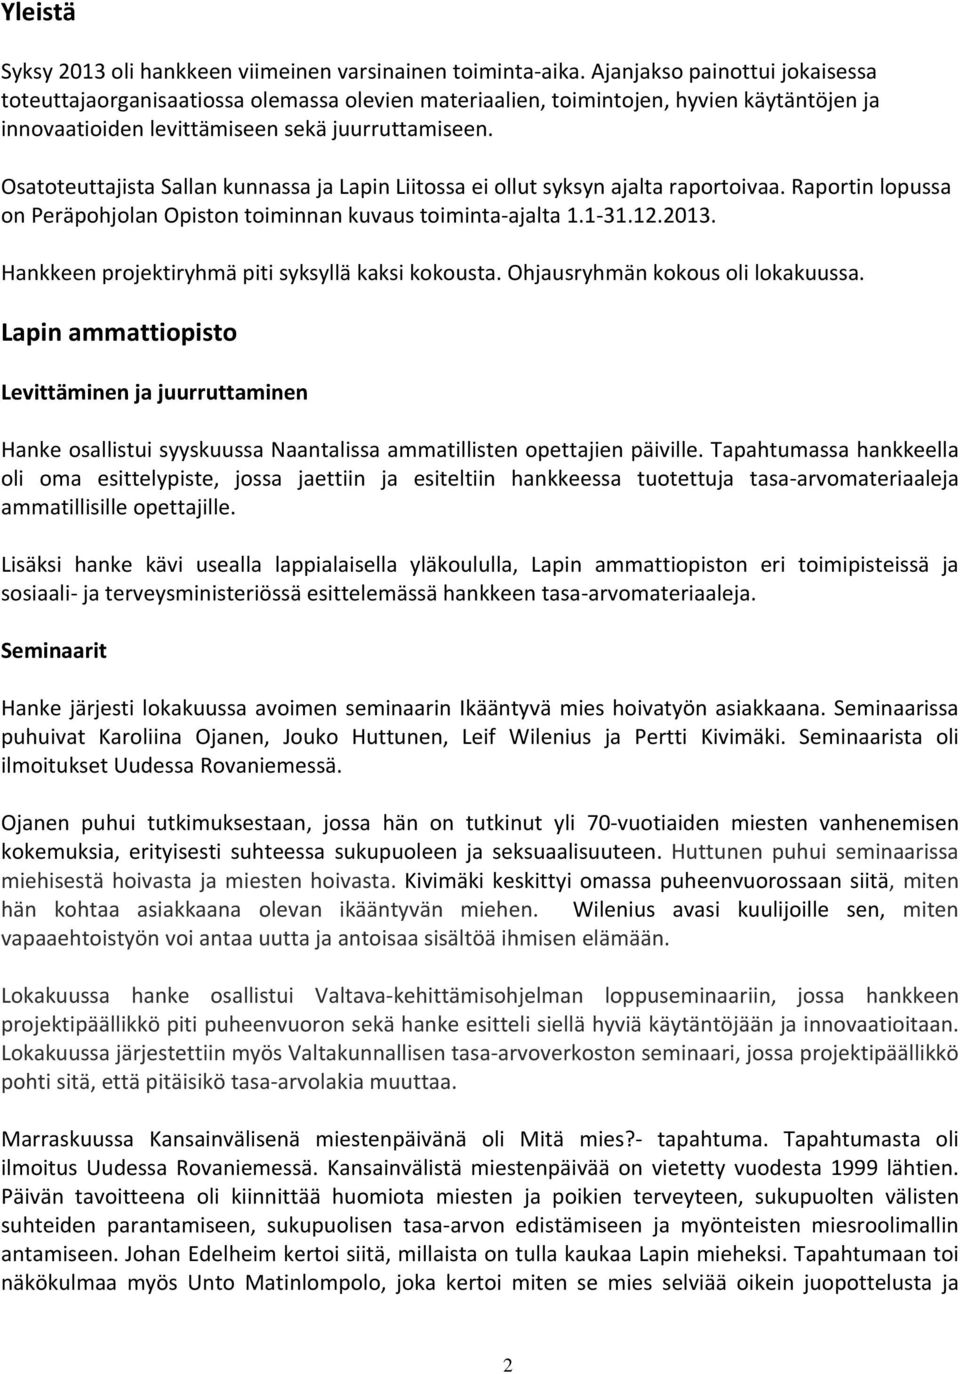 Osatoteuttajista Sallan kunnassa ja Lapin Liitossa ei ollut syksyn ajalta raportoivaa. Raportin lopussa on Peräpohjolan Opiston toiminnan kuvaus toiminta ajalta 1.1 31.12.2013.